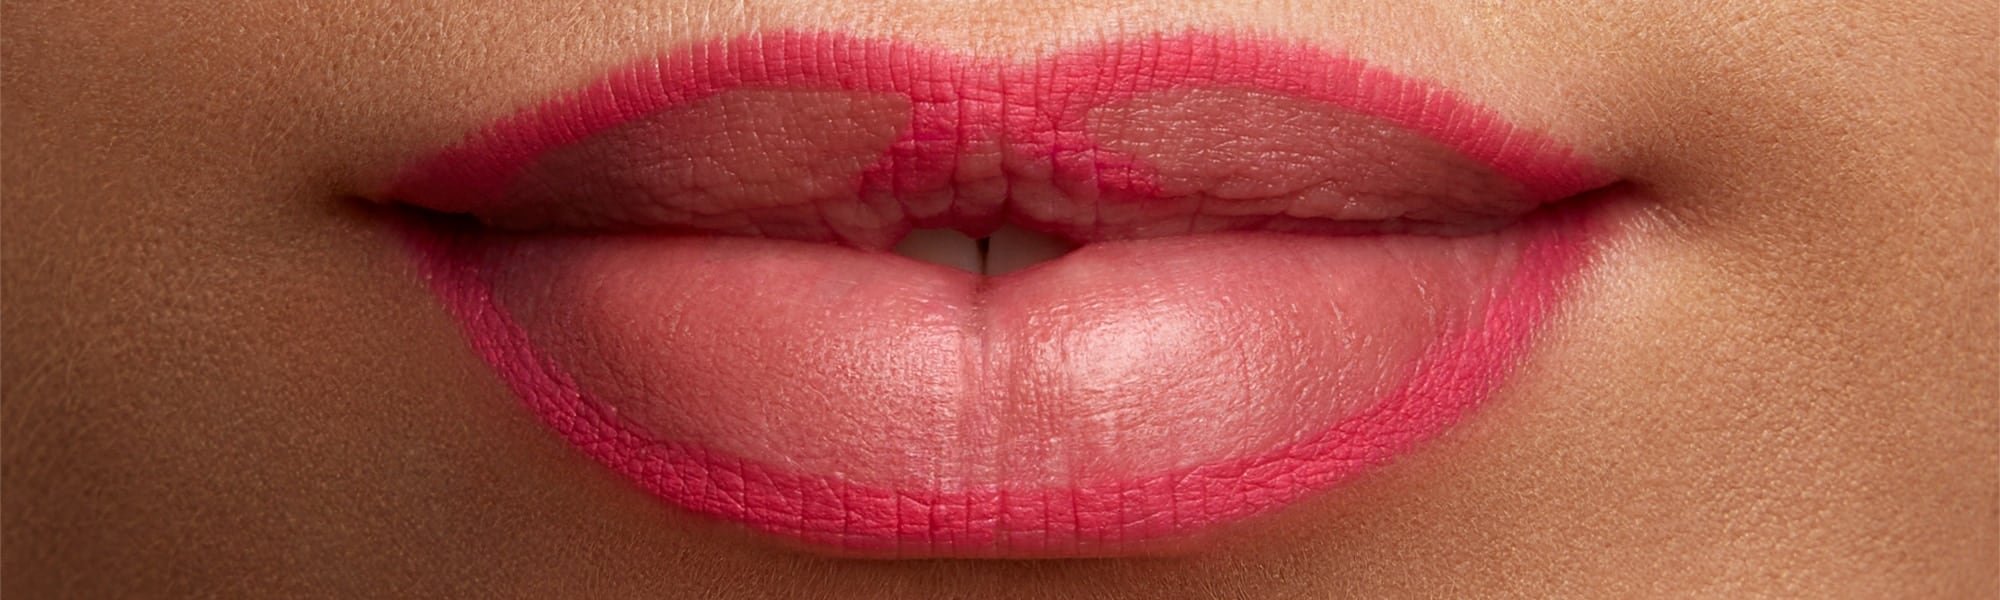 Ein mit Lippenstift geschminkter Mund